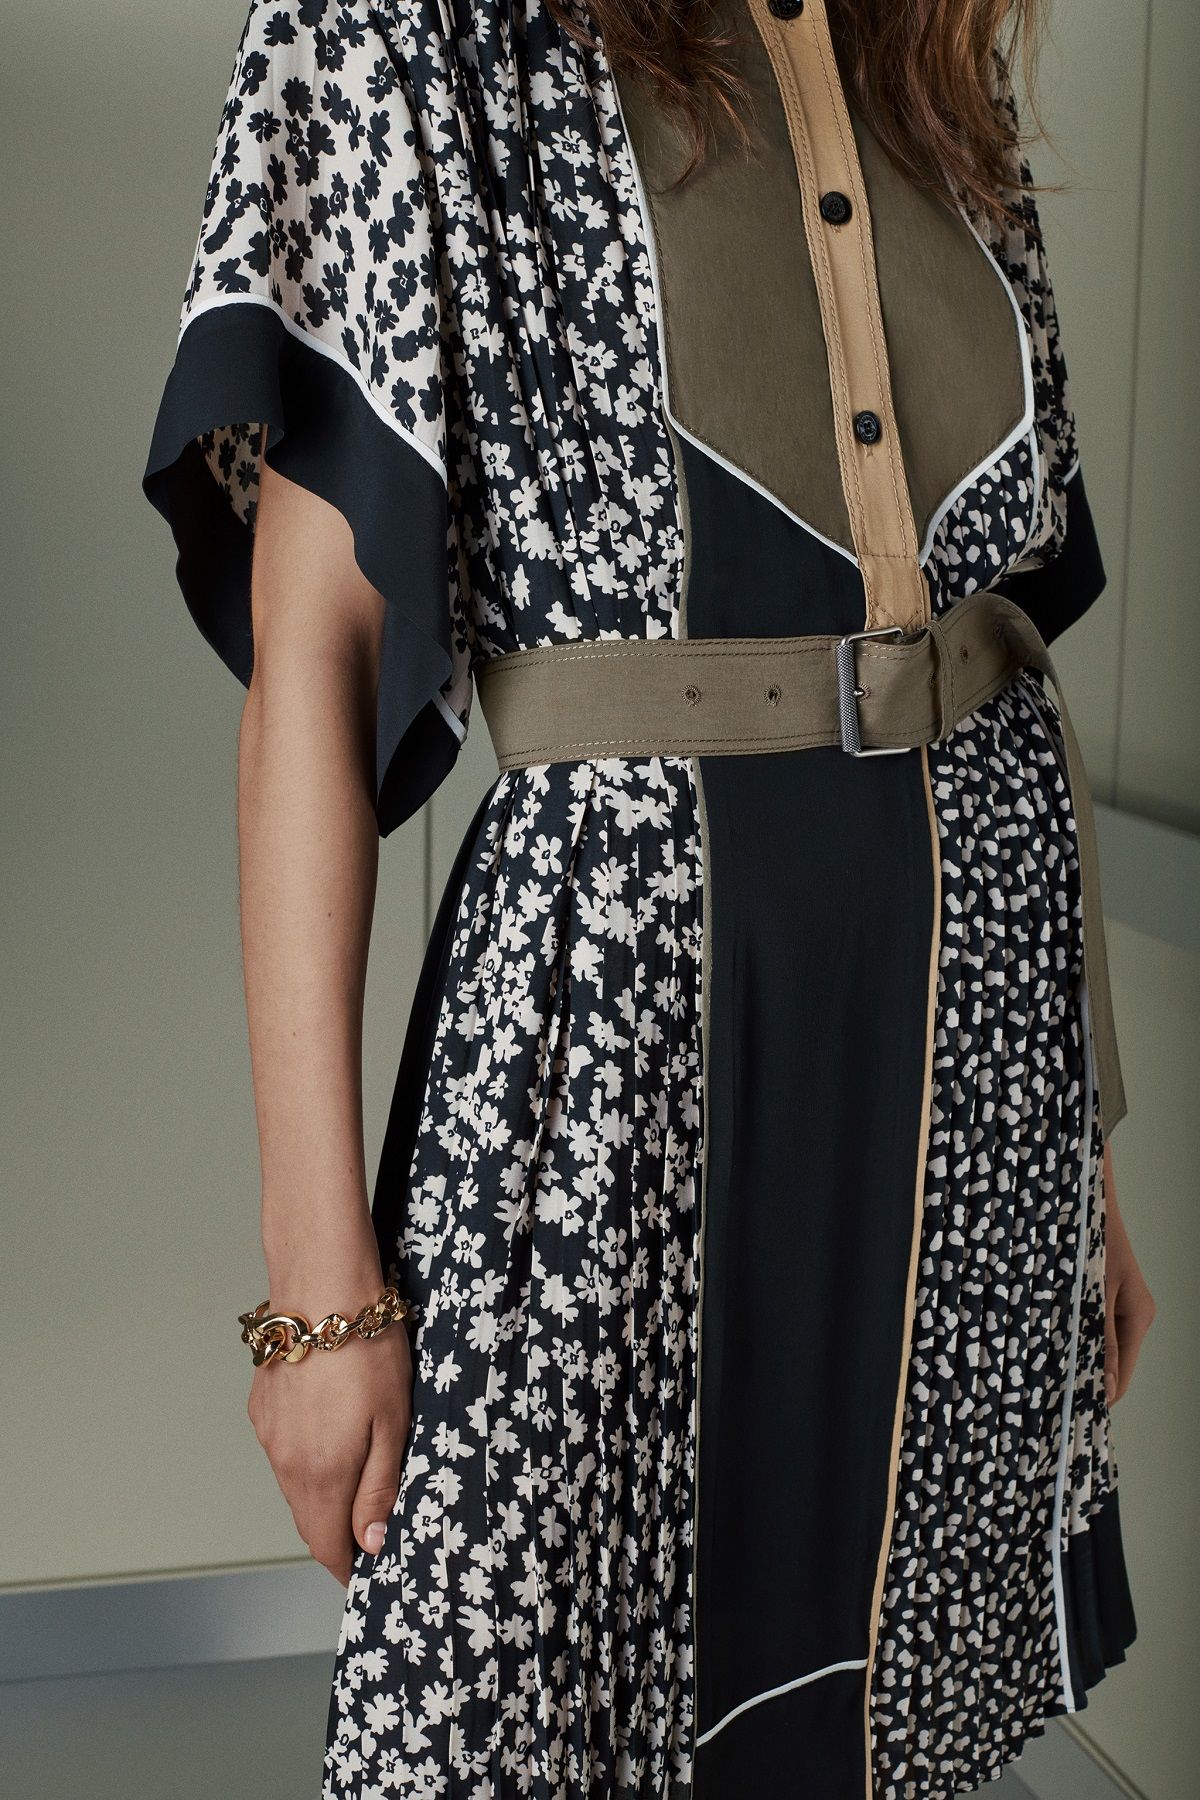 Detalle del vestido estampado de la nueva colección de Zara SRPLS